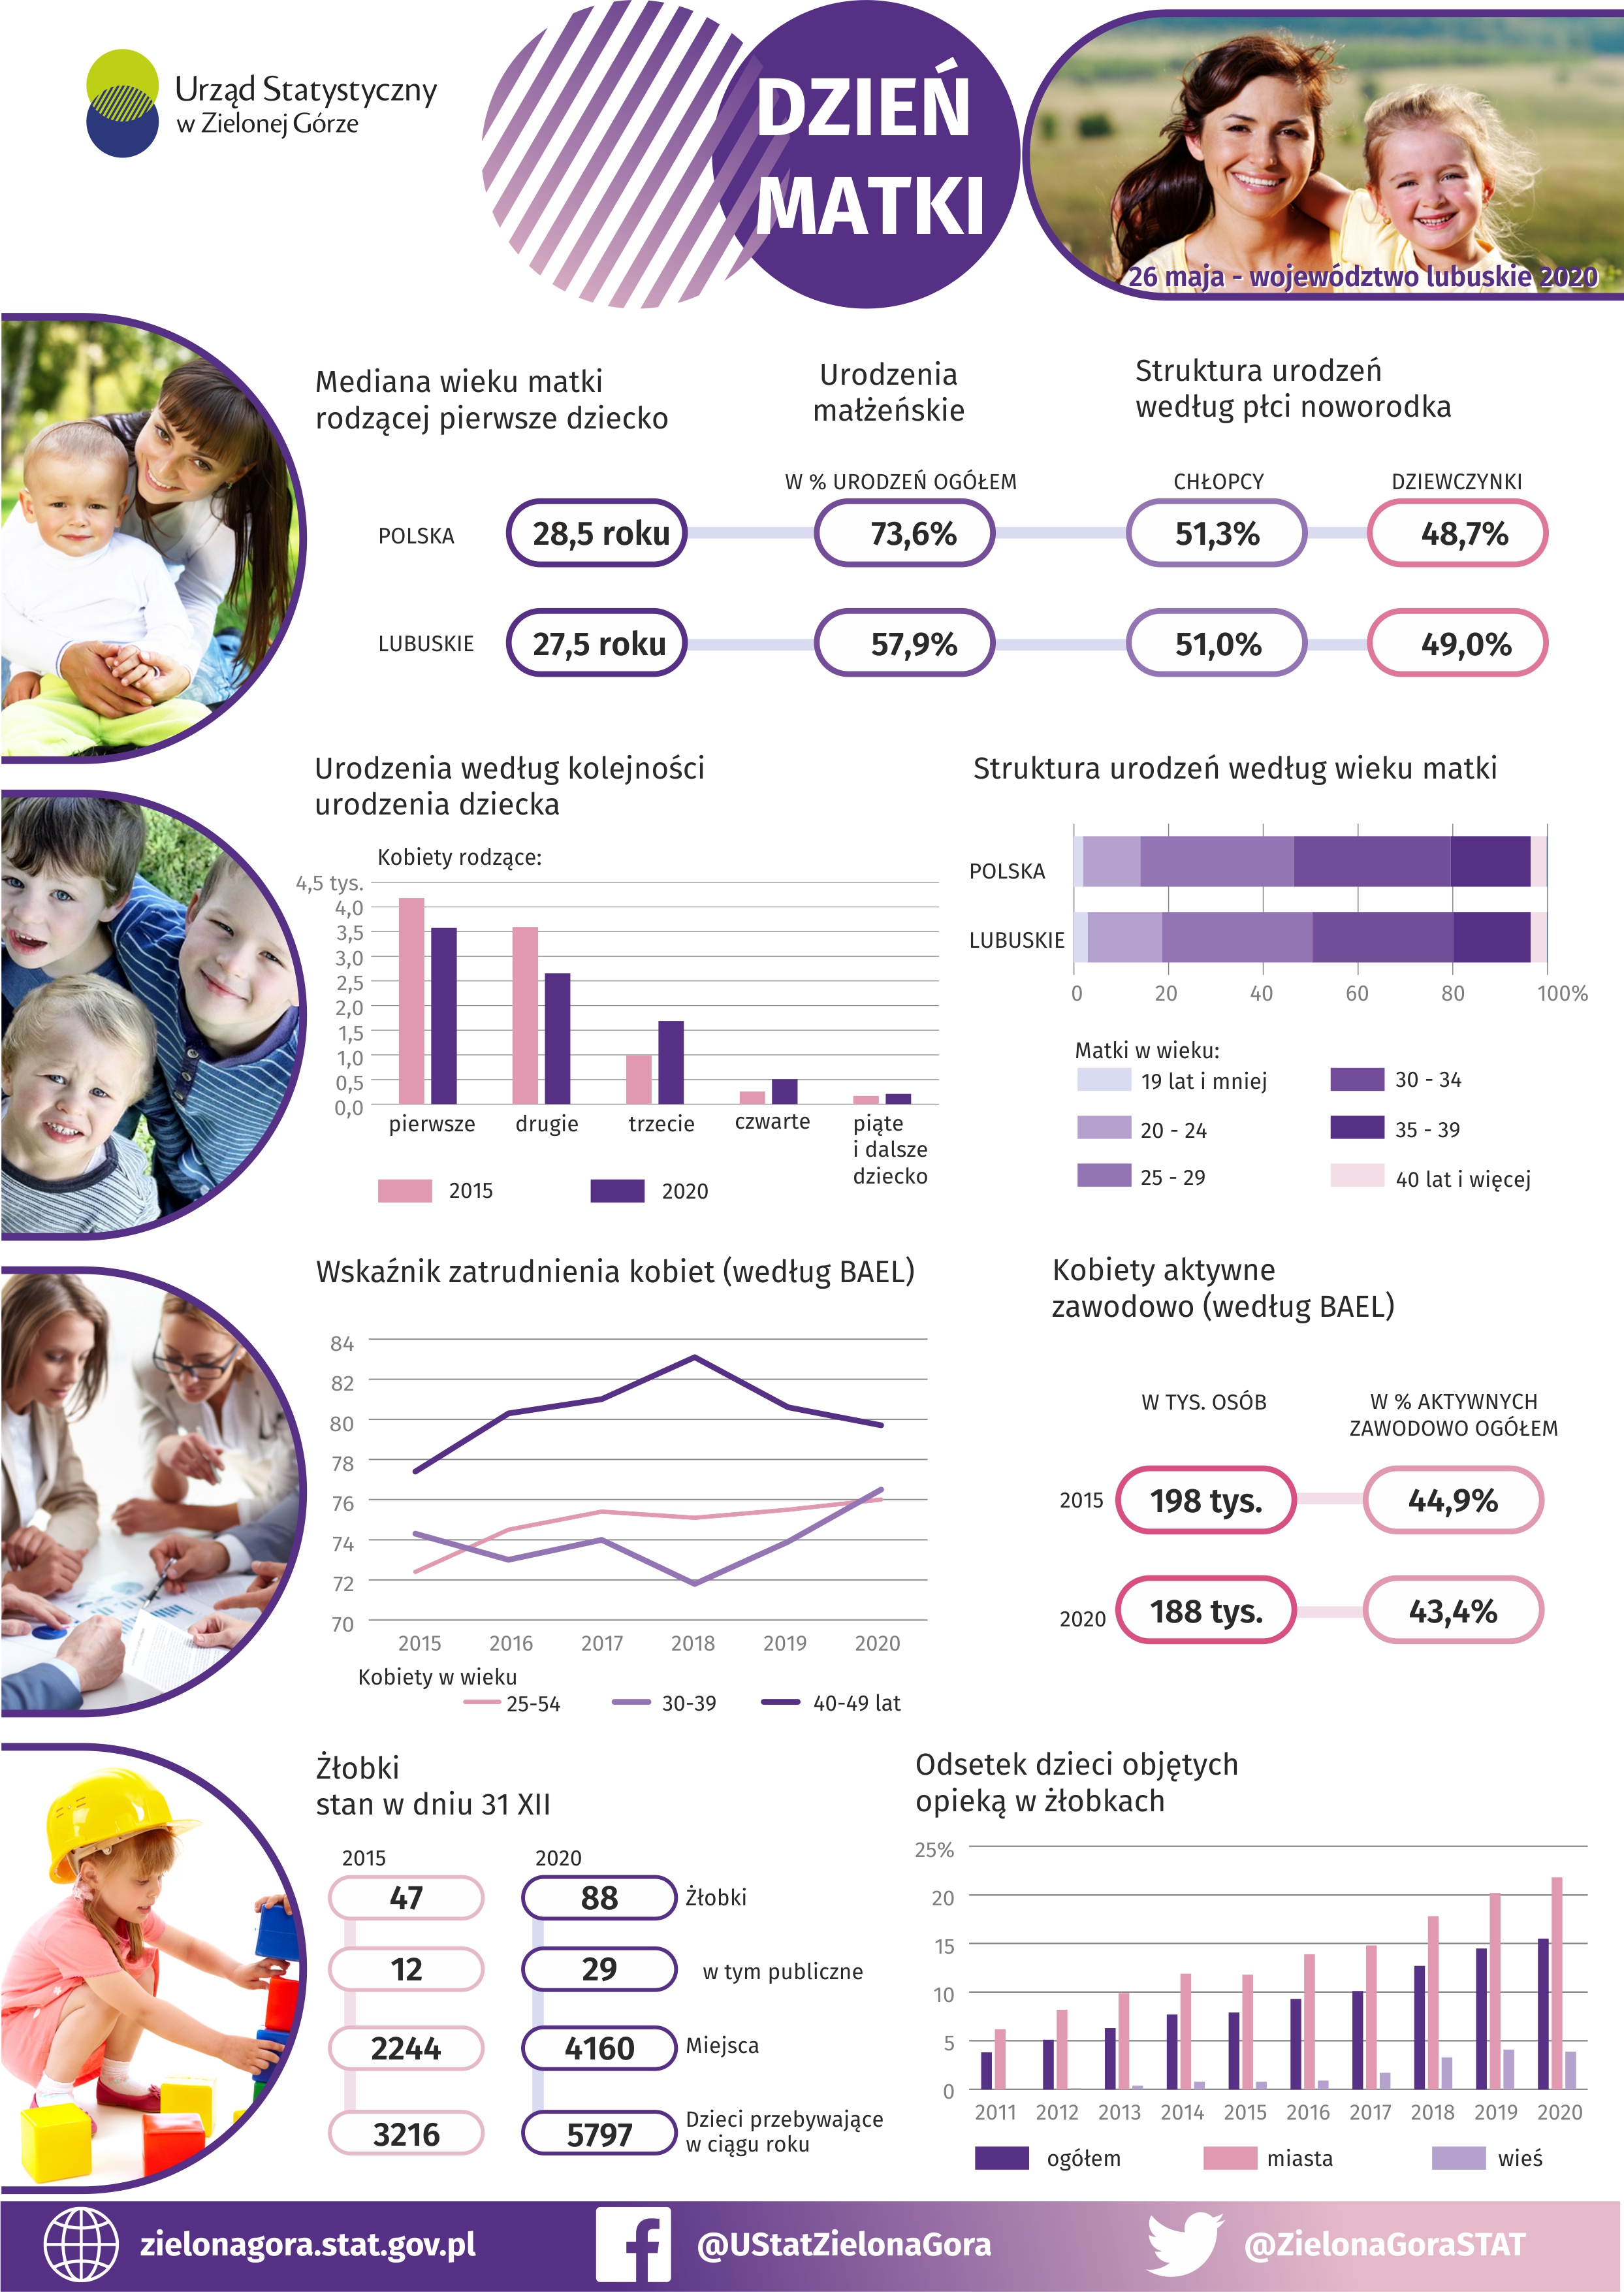 Infografika prezentująca wybrane dane przygotowane z okazji Dnia Matki